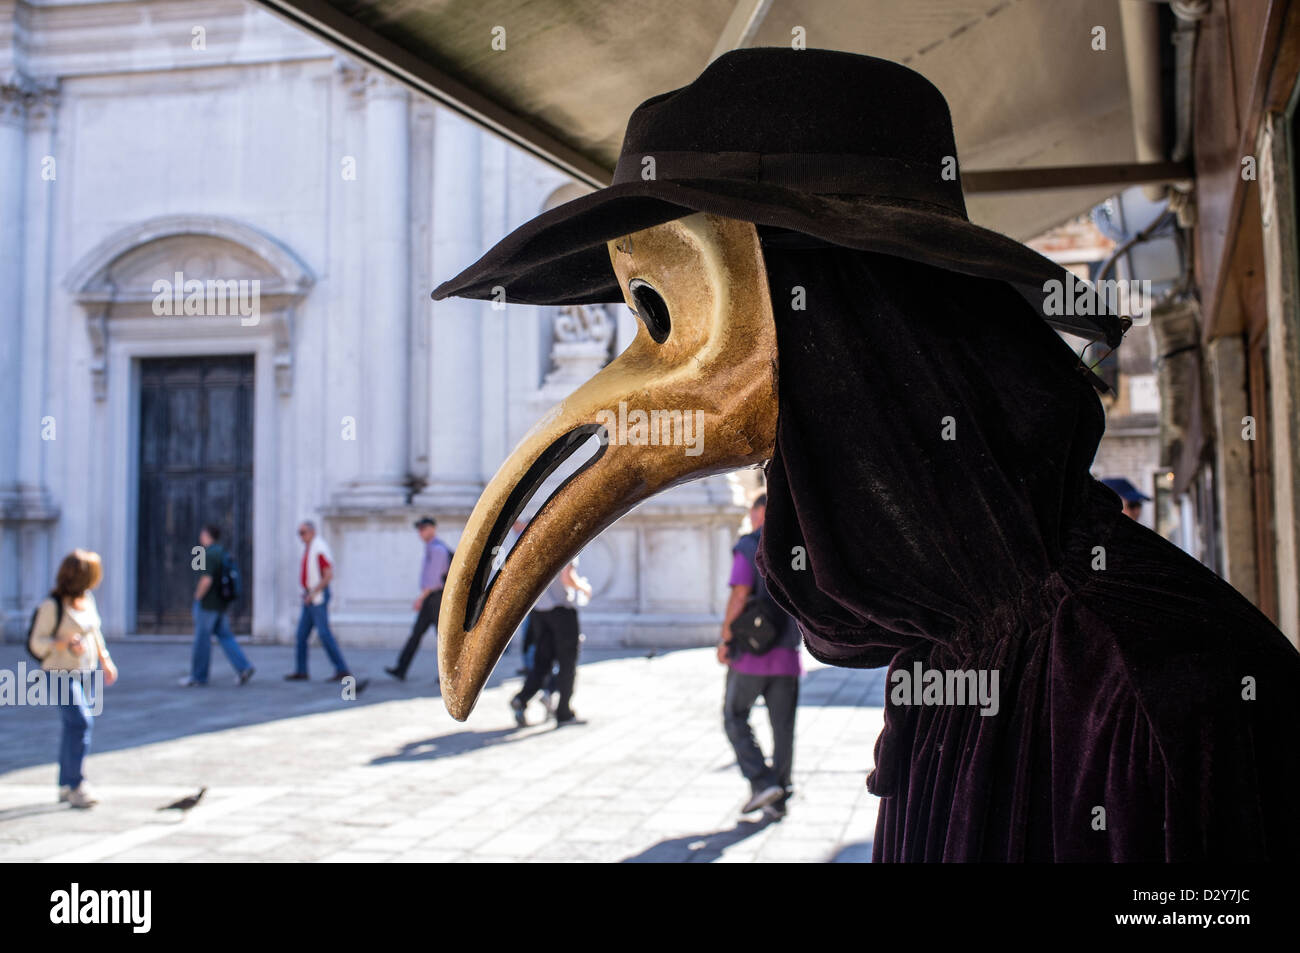 Masque Bec d'oiseau sur l'affichage à l'extérieur de l'atelier à Venise Banque D'Images